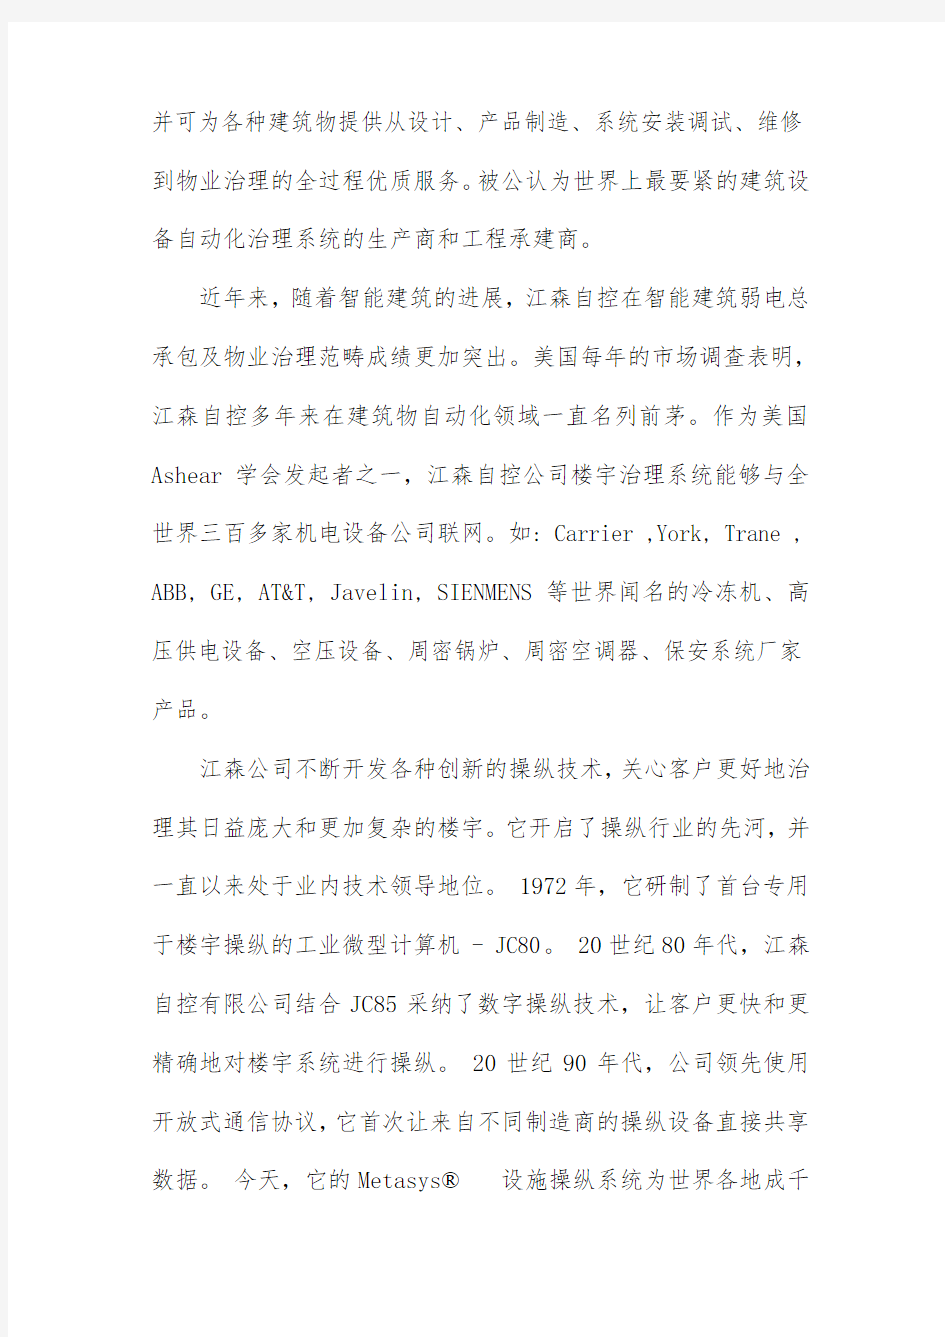 对美国江森自控有限公司进驻中国模式分析